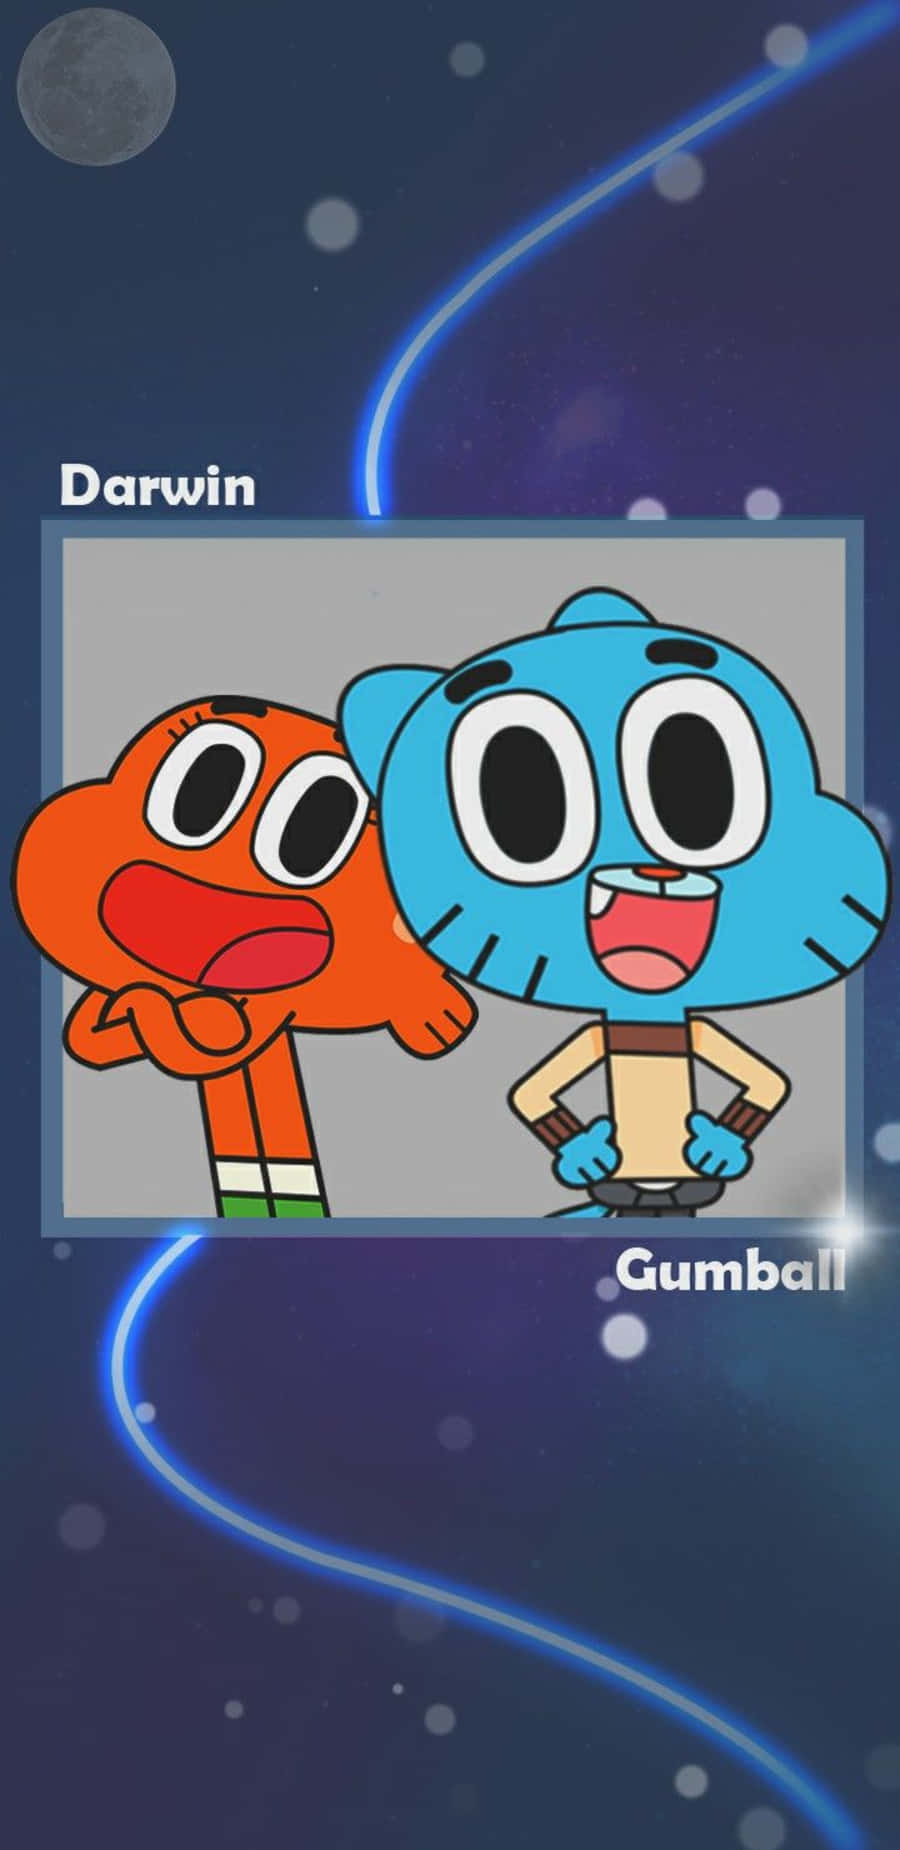 Download Gumball And Darwin Wallpaper